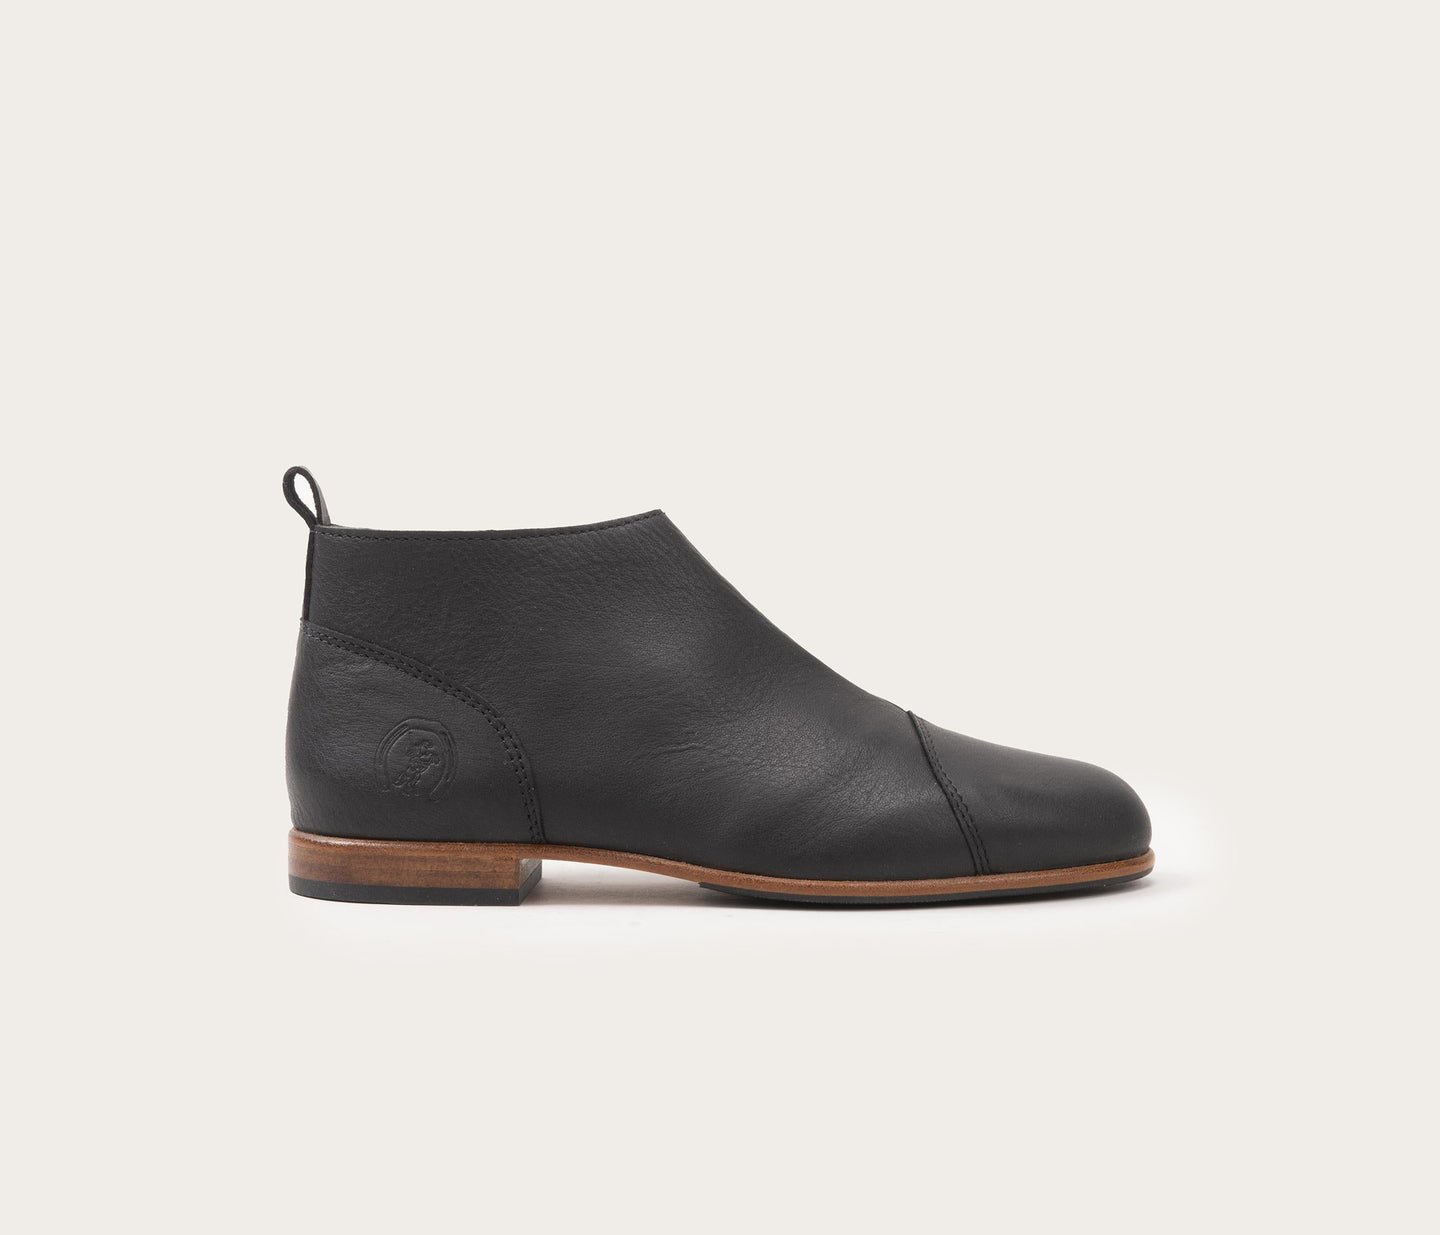 chaussure en cuir souple noir - chaussure en cuir français - La botte gardiane chaussure en cuir - chaussure en cuir la botte gardiane - chaussure en cuir souple noir femme - chaussure noire à zip - chaussure noir en cuir à zip - chaussure noire pour femme avec un zip - chaussure en cuir zippée